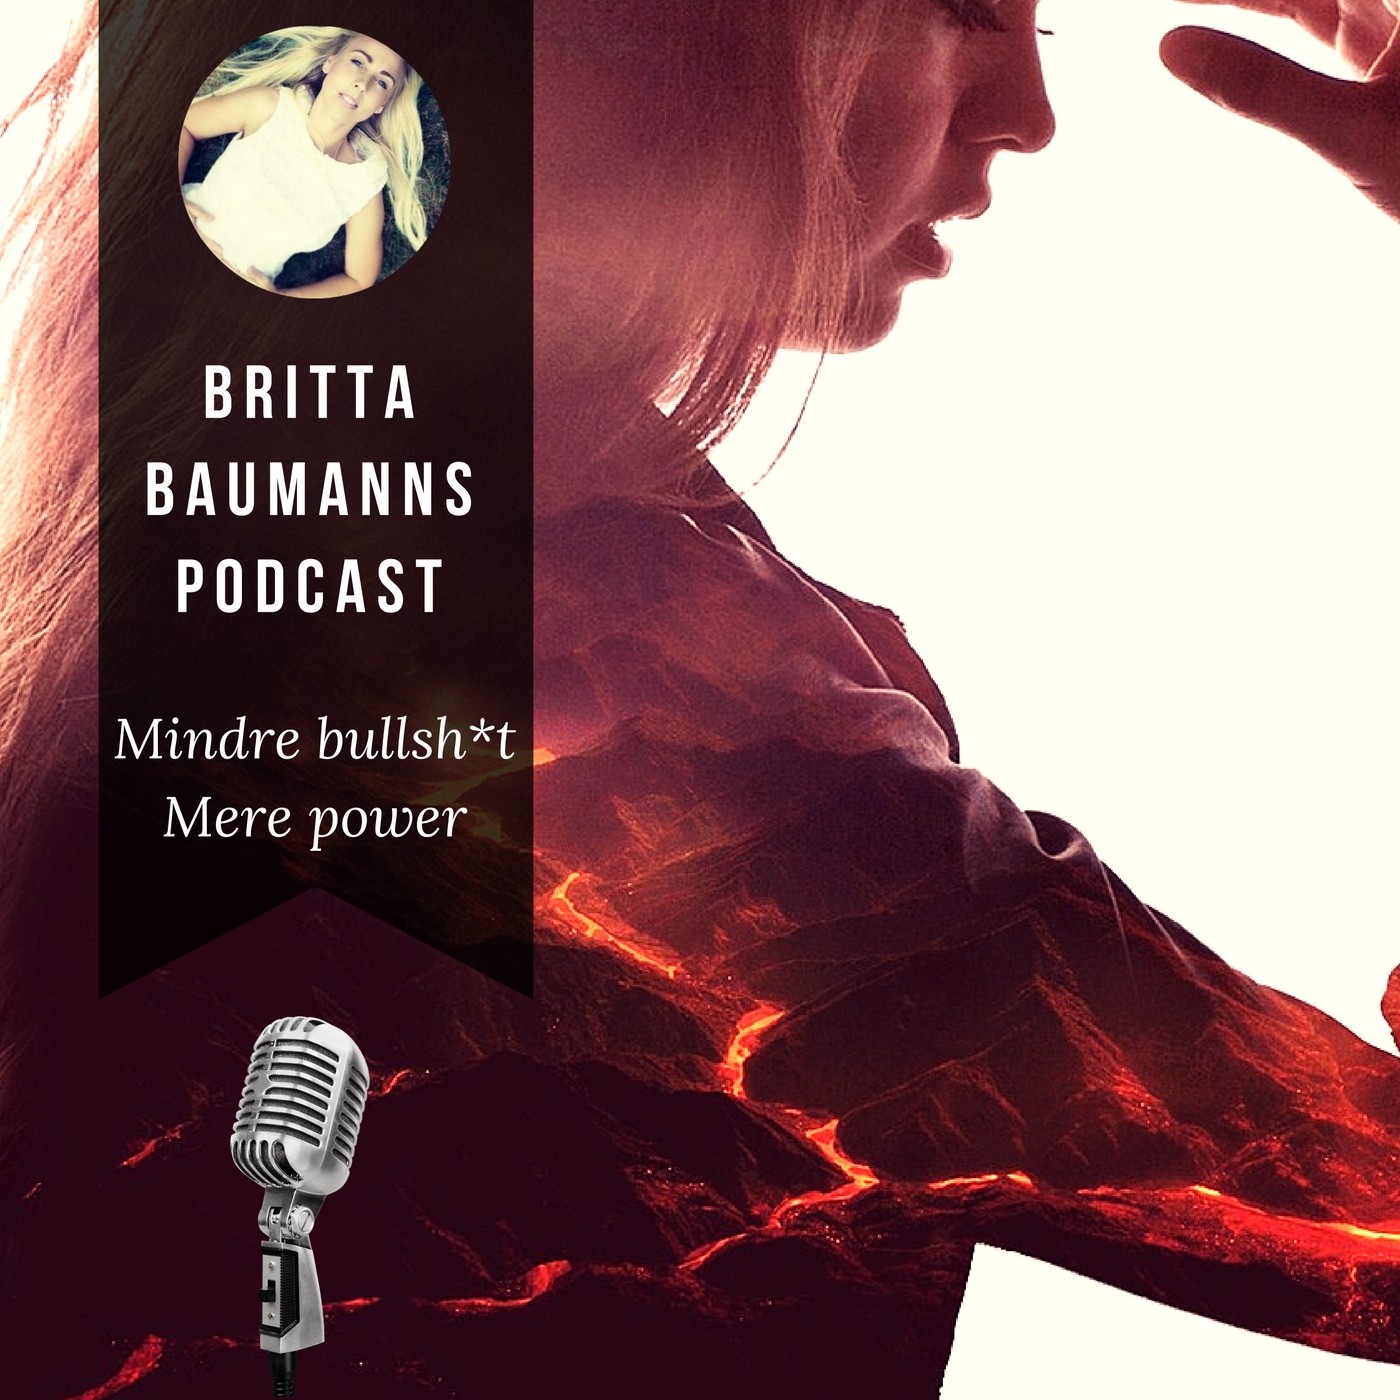 Britta Baumanns Podcast: Mindre bullsh*t! Mere power!